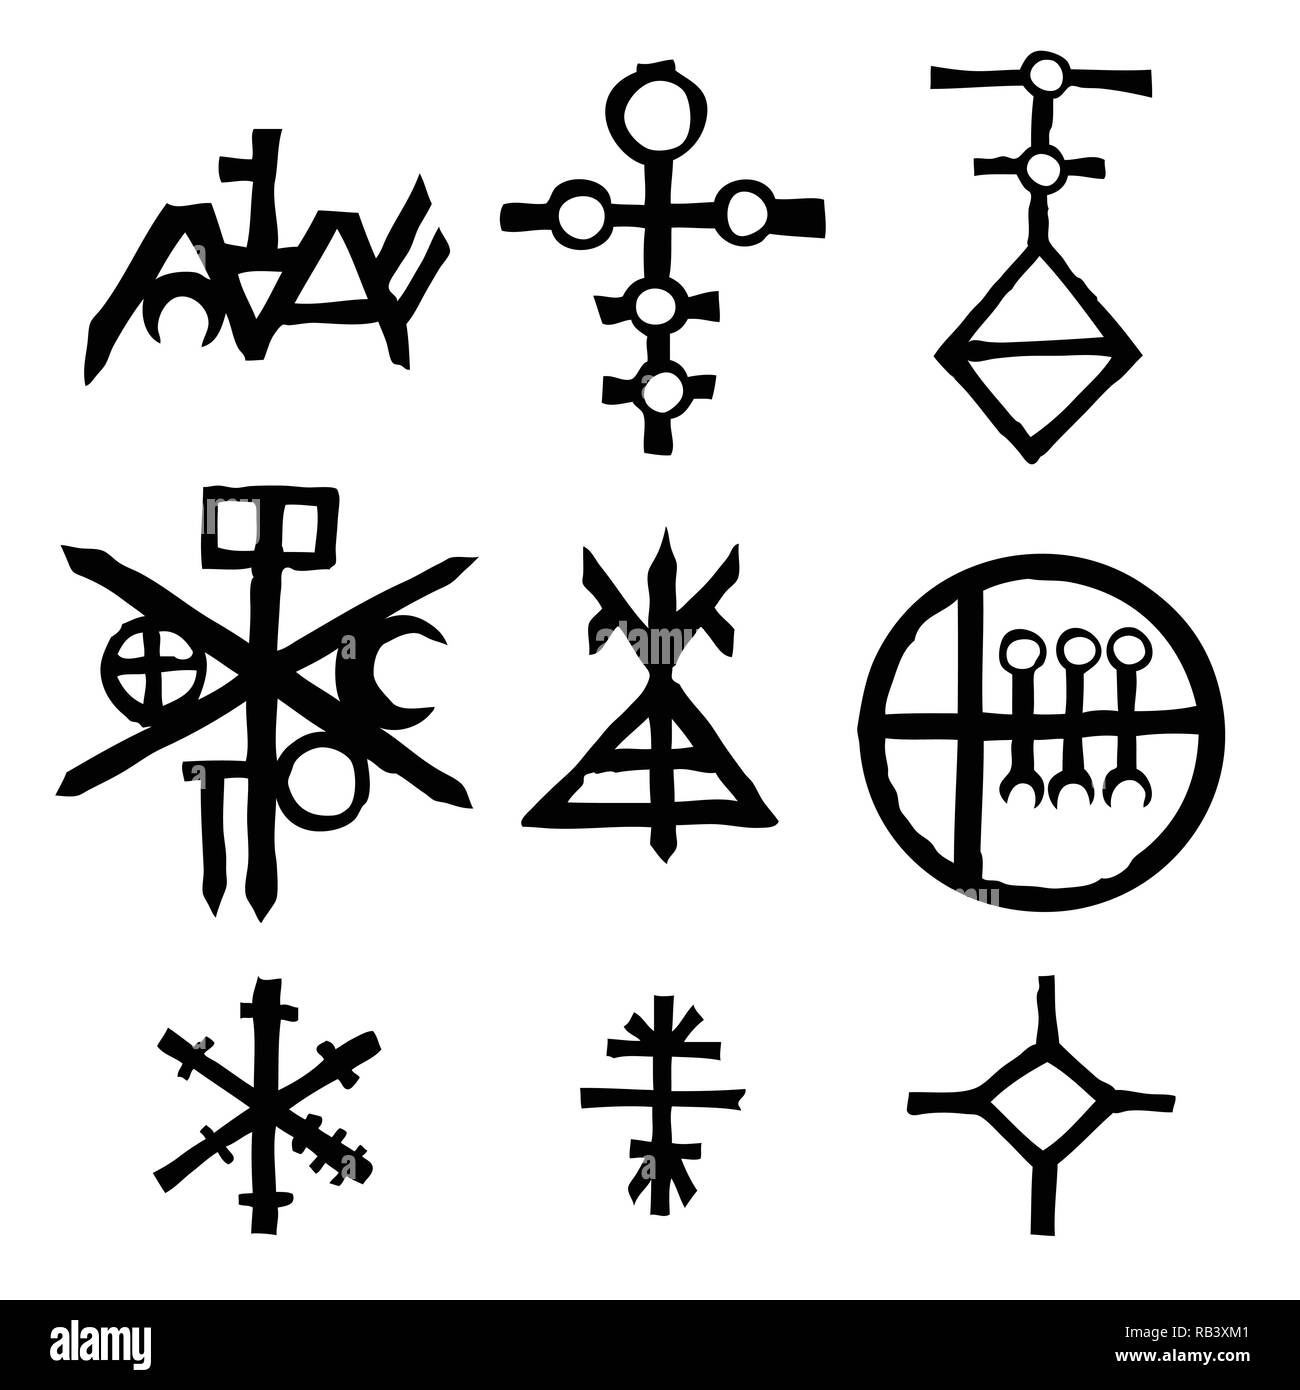 Reihe von Icons und Symbole Buchstaben inspiriert zum Thema Magie und Witch Craft okkulte Alchemie, Mystik, Esoterik Religion und Mason, isoliert. Tattoos Stock Vektor